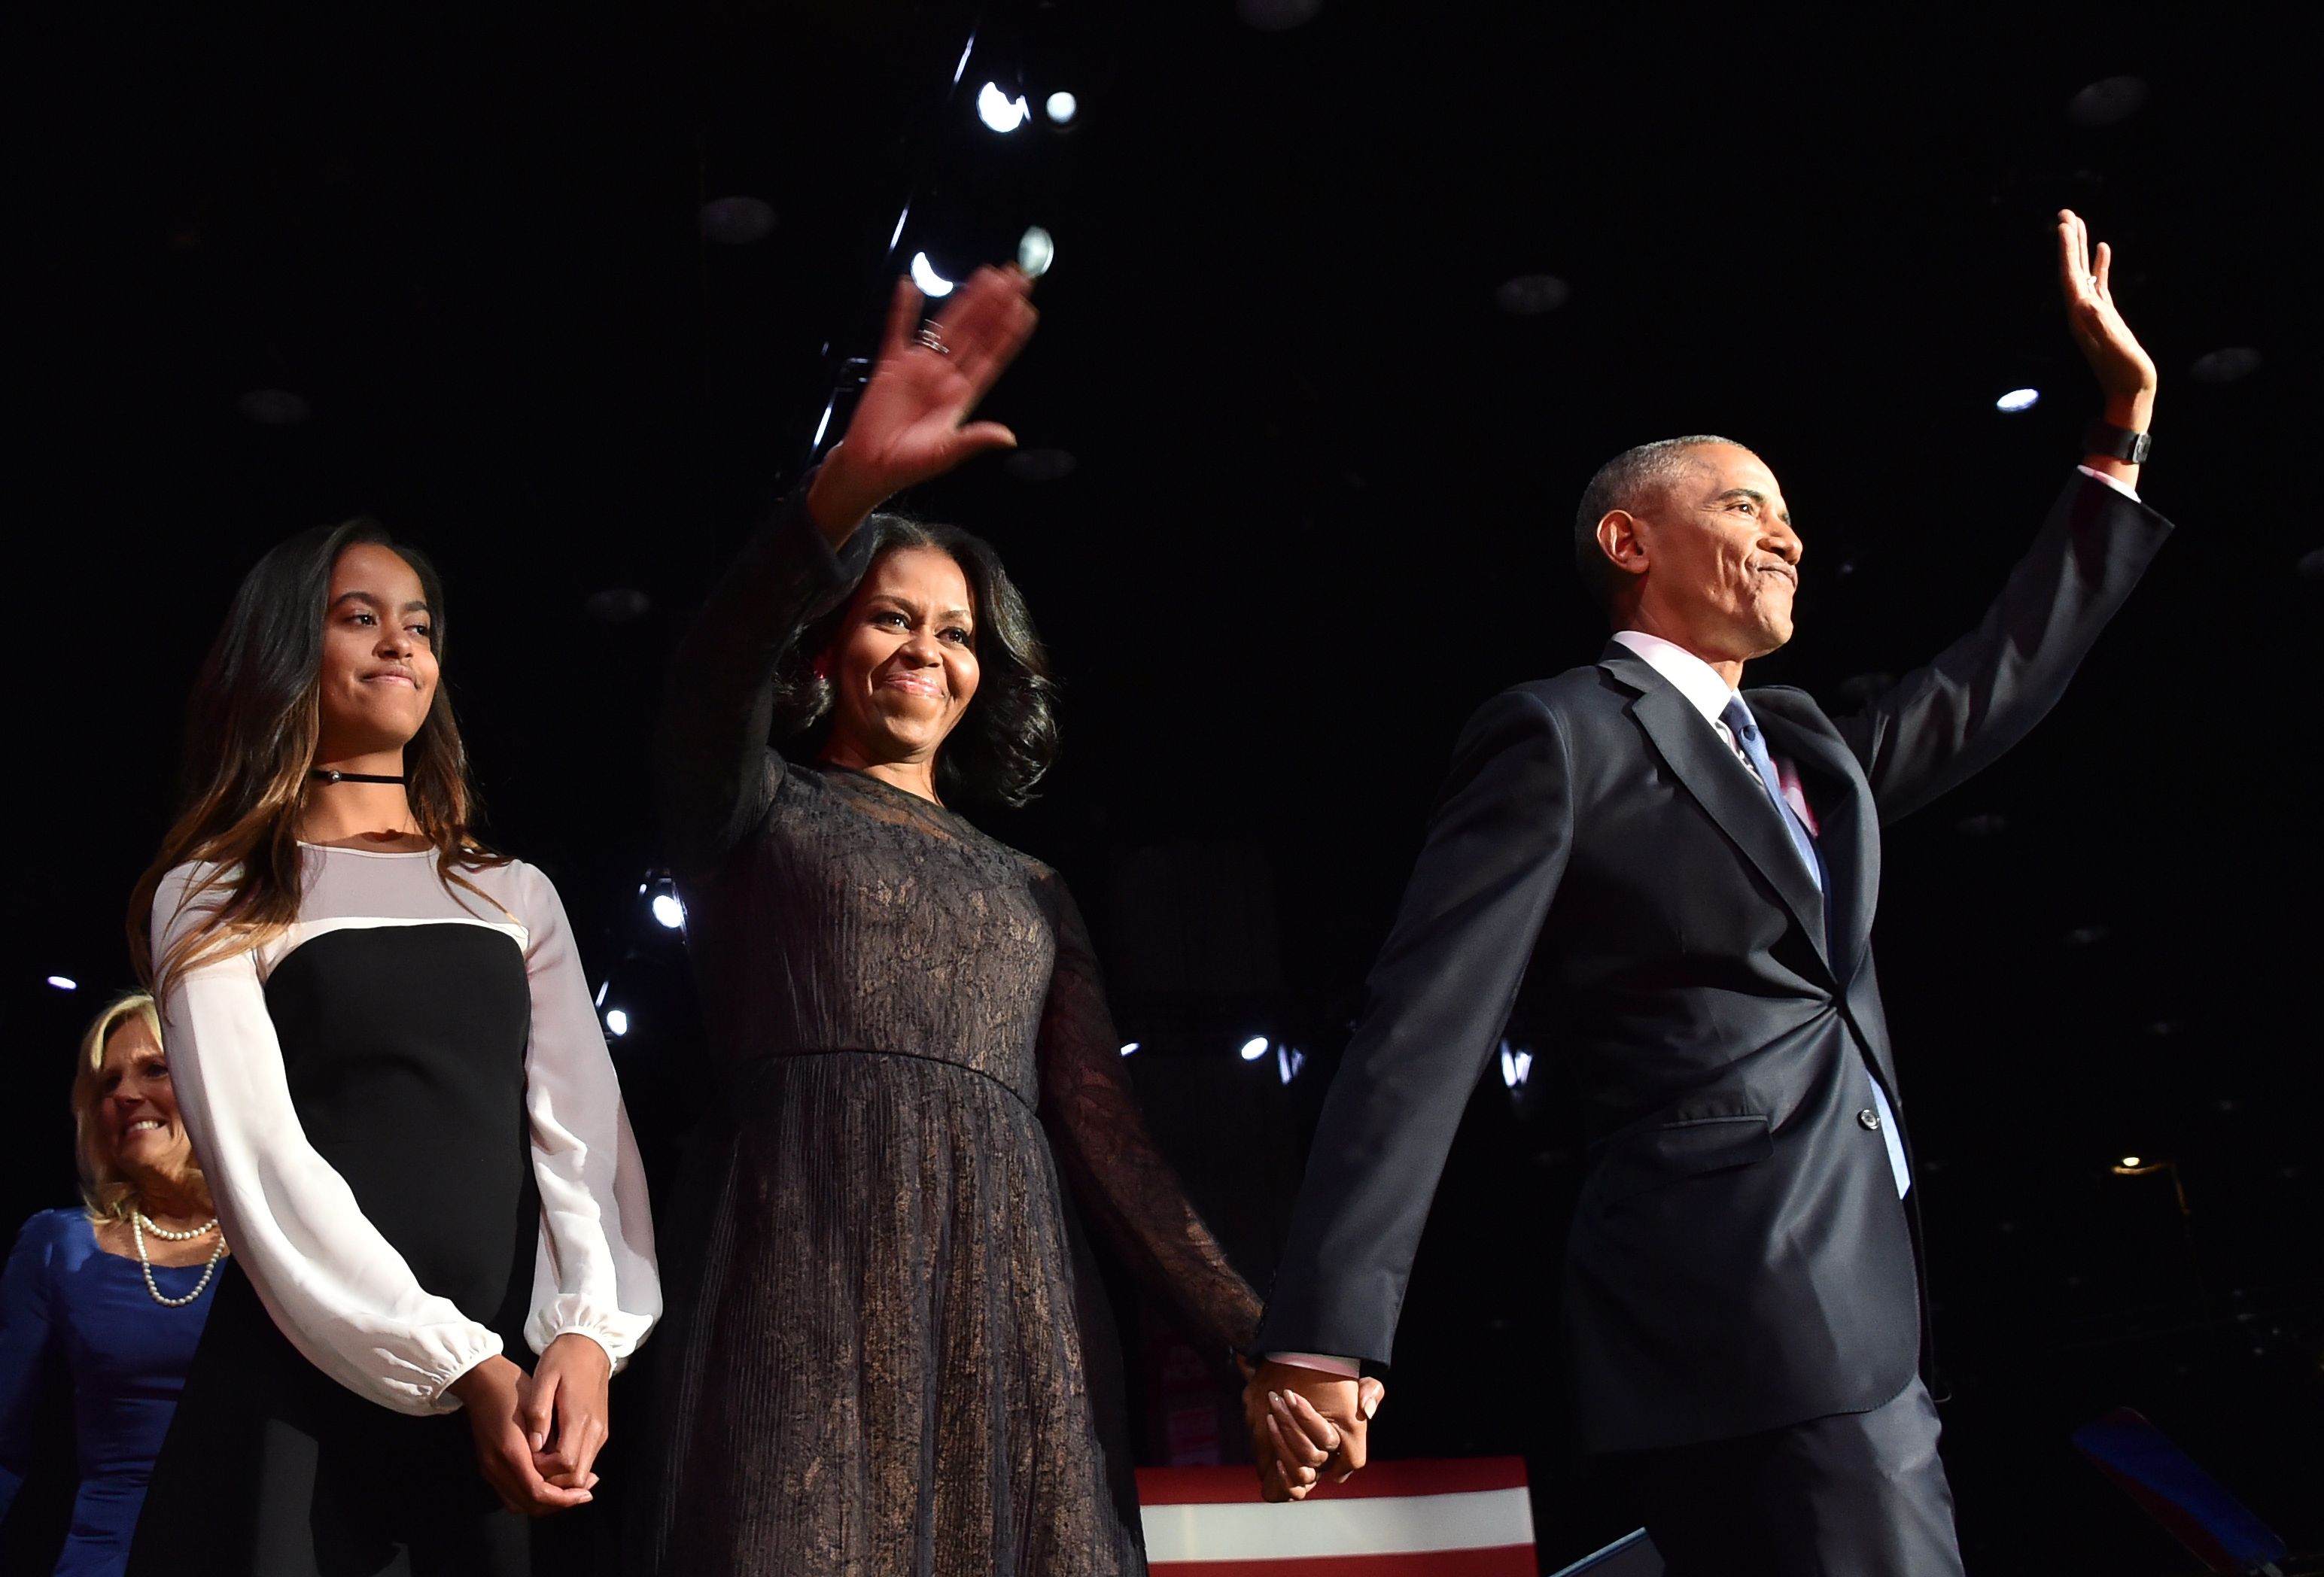 Malia mira a la multitud mientras Michelle y Barack Obama saludan a sus seguidores el 10 de enero de 2017, en Chicago, Illinois | Fuente: Getty Images